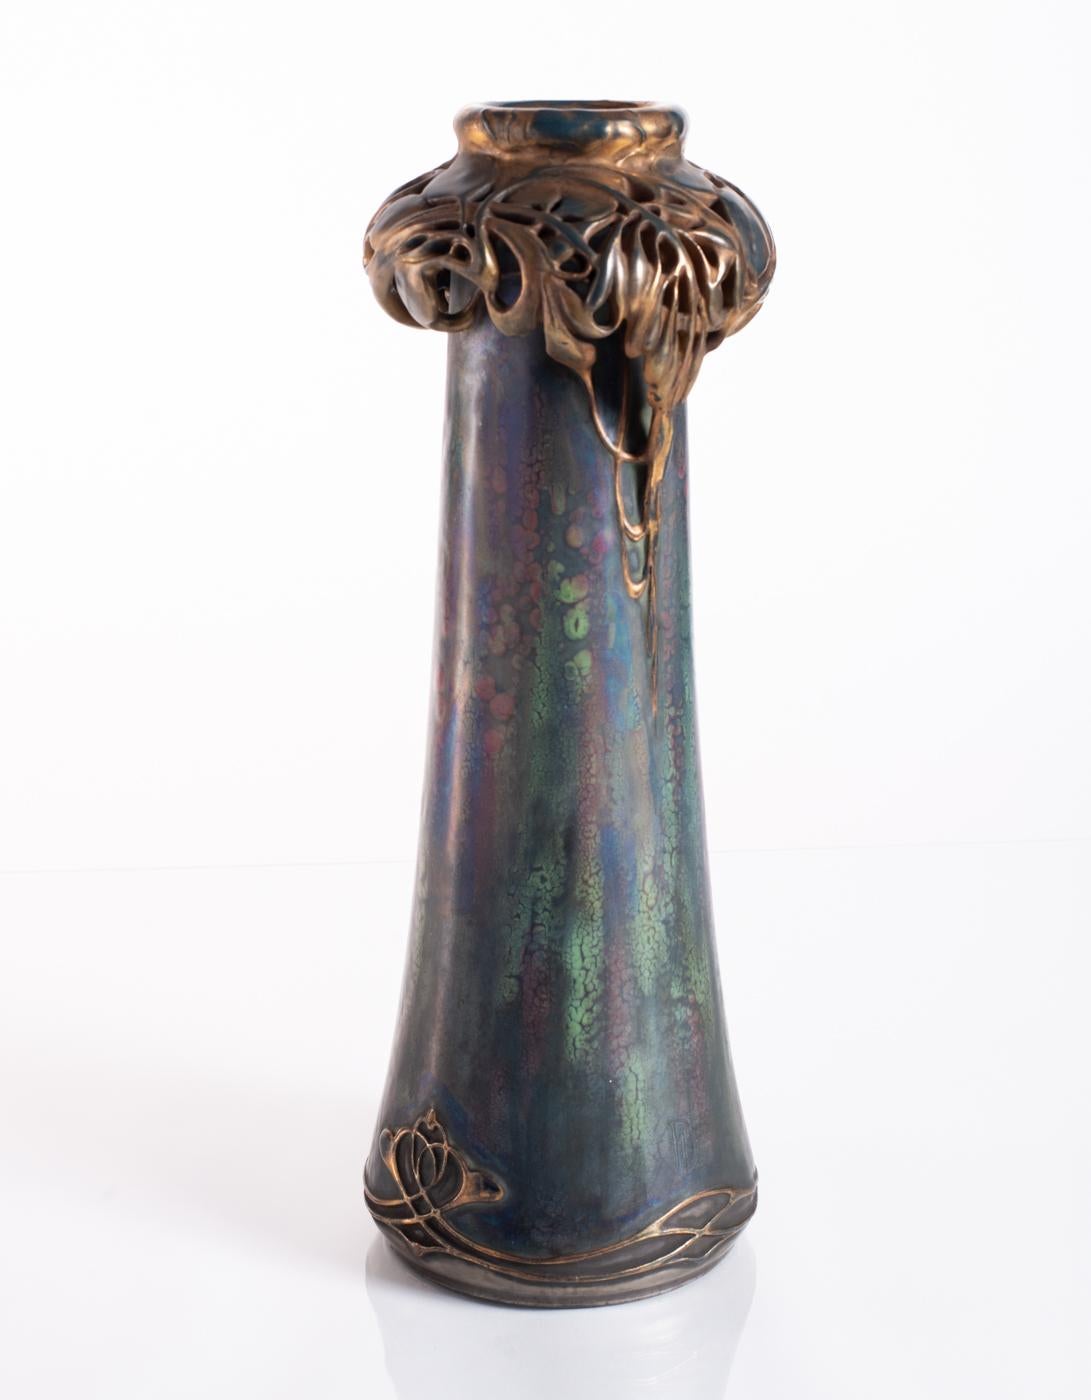 Blumenkranzvase von Paul Dachsel für Amphora, um 1900 – Art von RStK Amphora